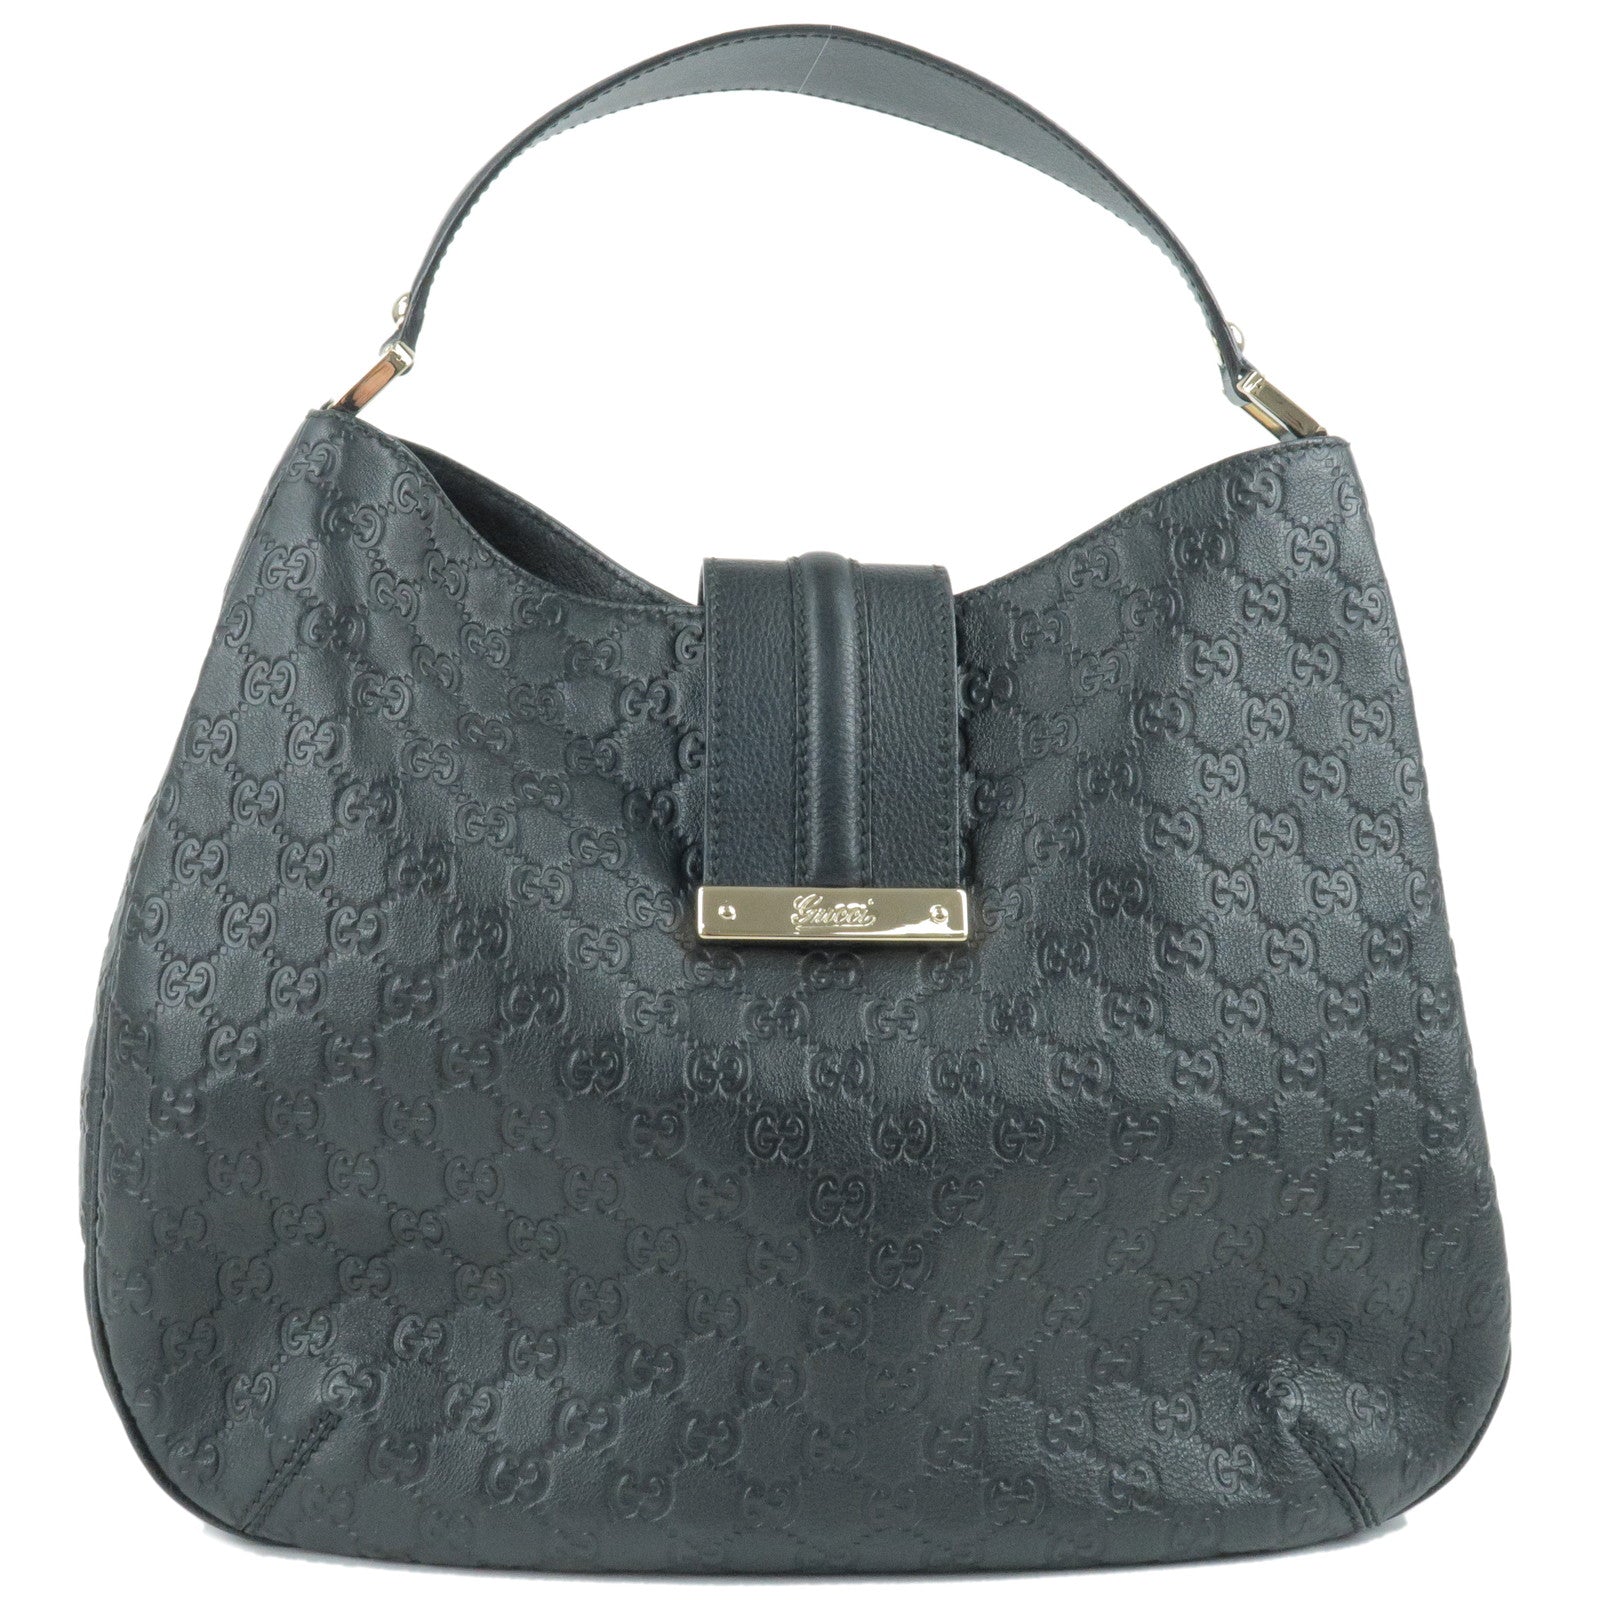 GUCCI-Guccissima-Leather-Shoulder-Bag-Hand-Bag-Black-233604